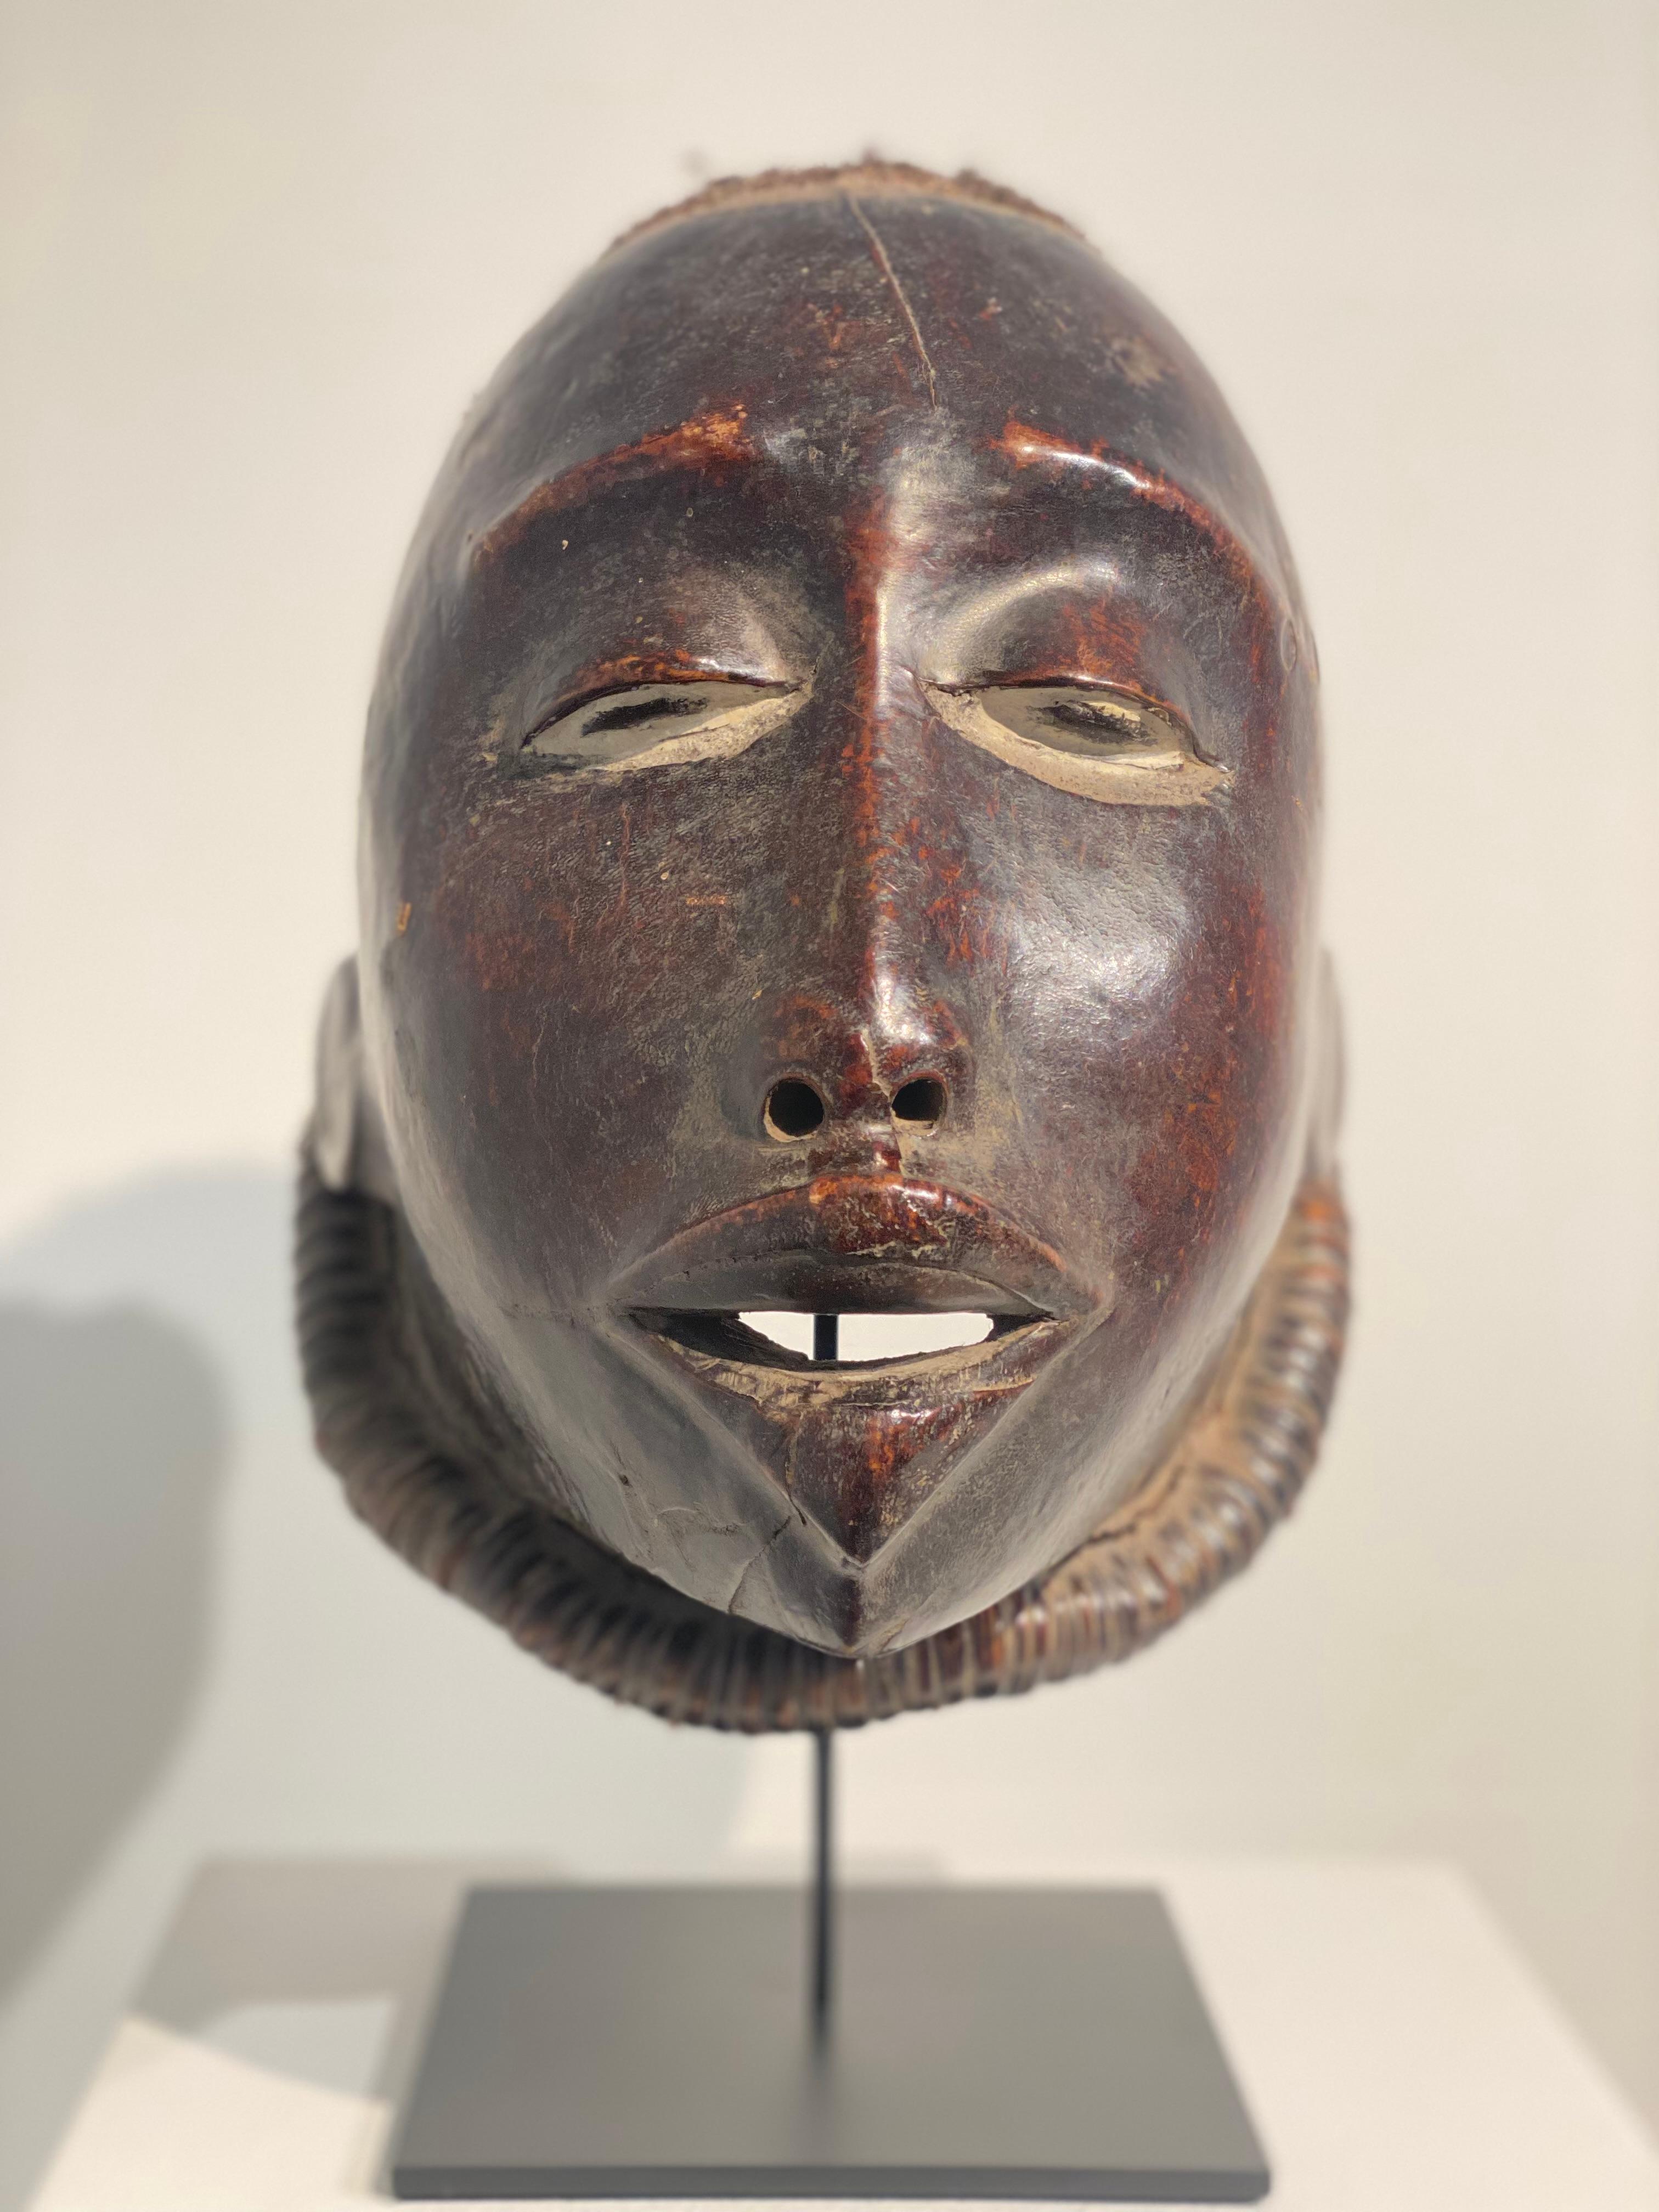 Magnifique masque africain du Mozambique,
Tribu Makonde, vers 1965,
le masque présente une patine ancienne et une brillance exceptionnelles,
en bois, en peau d'animal et en air humain,
puissant objet de collection